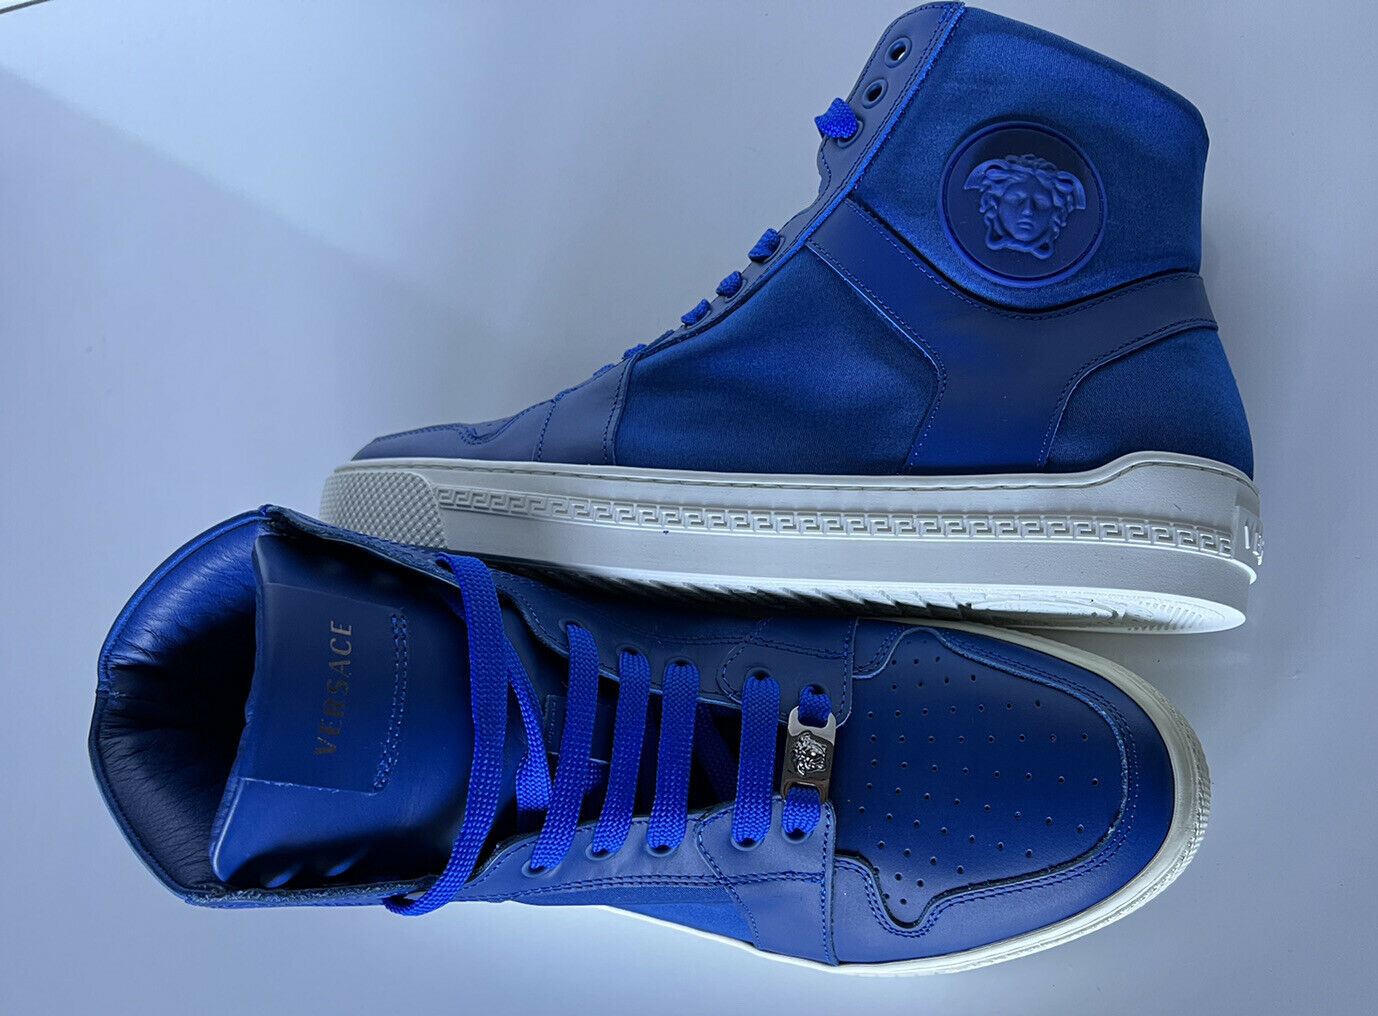 NIB 800 долларов США Versace Синие высокие кроссовки из кожи/нейлона 8 США (41 евро) DSU7828S 